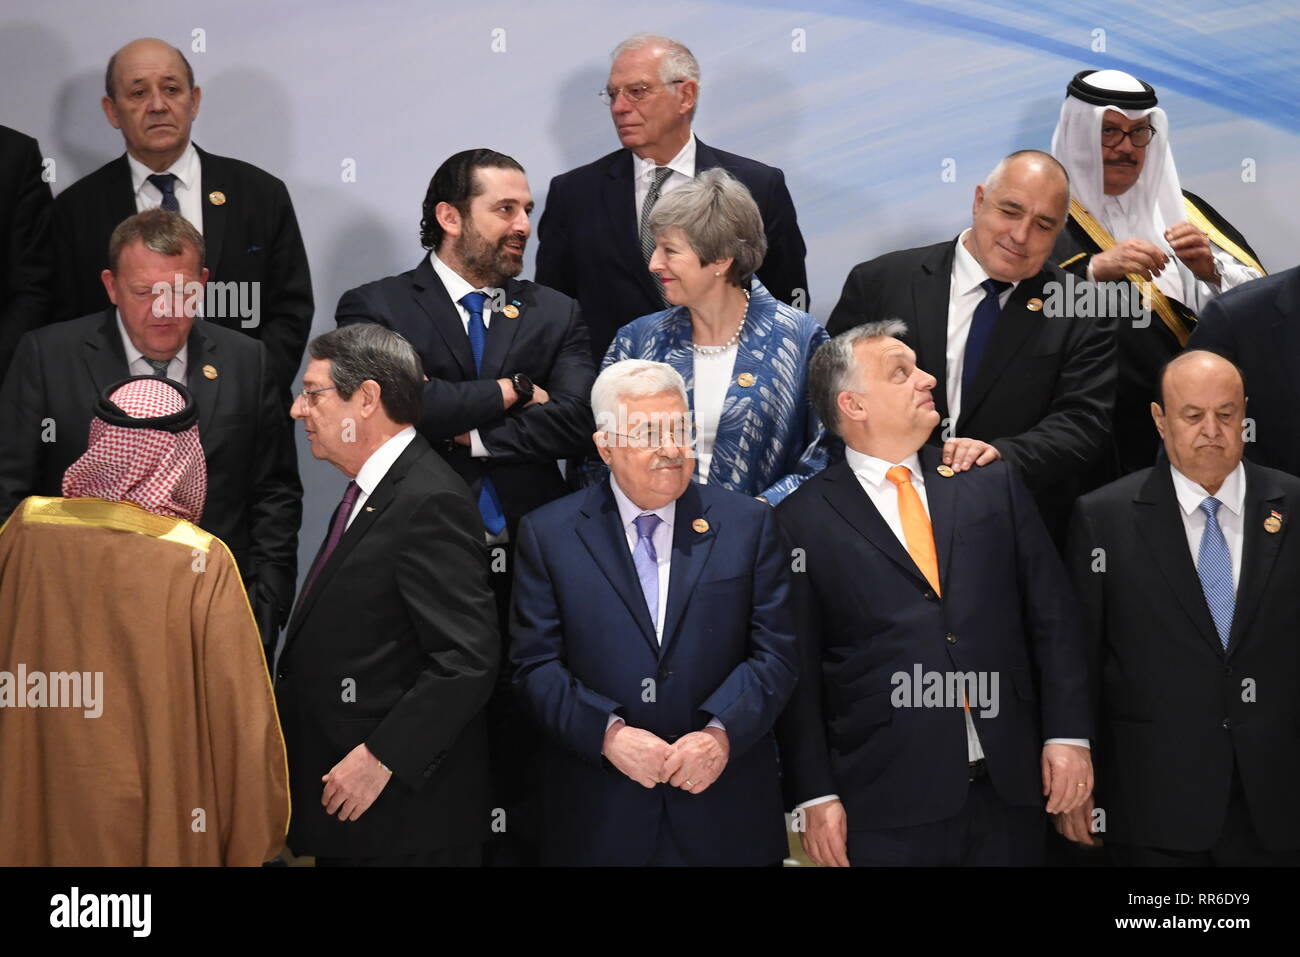 Premier ministre Theresa Mai (centre) dans une photo de groupe avec les représentants de l'UE-Ligue des États arabes sommet de Charm el-Cheikh, en Égypte. Banque D'Images